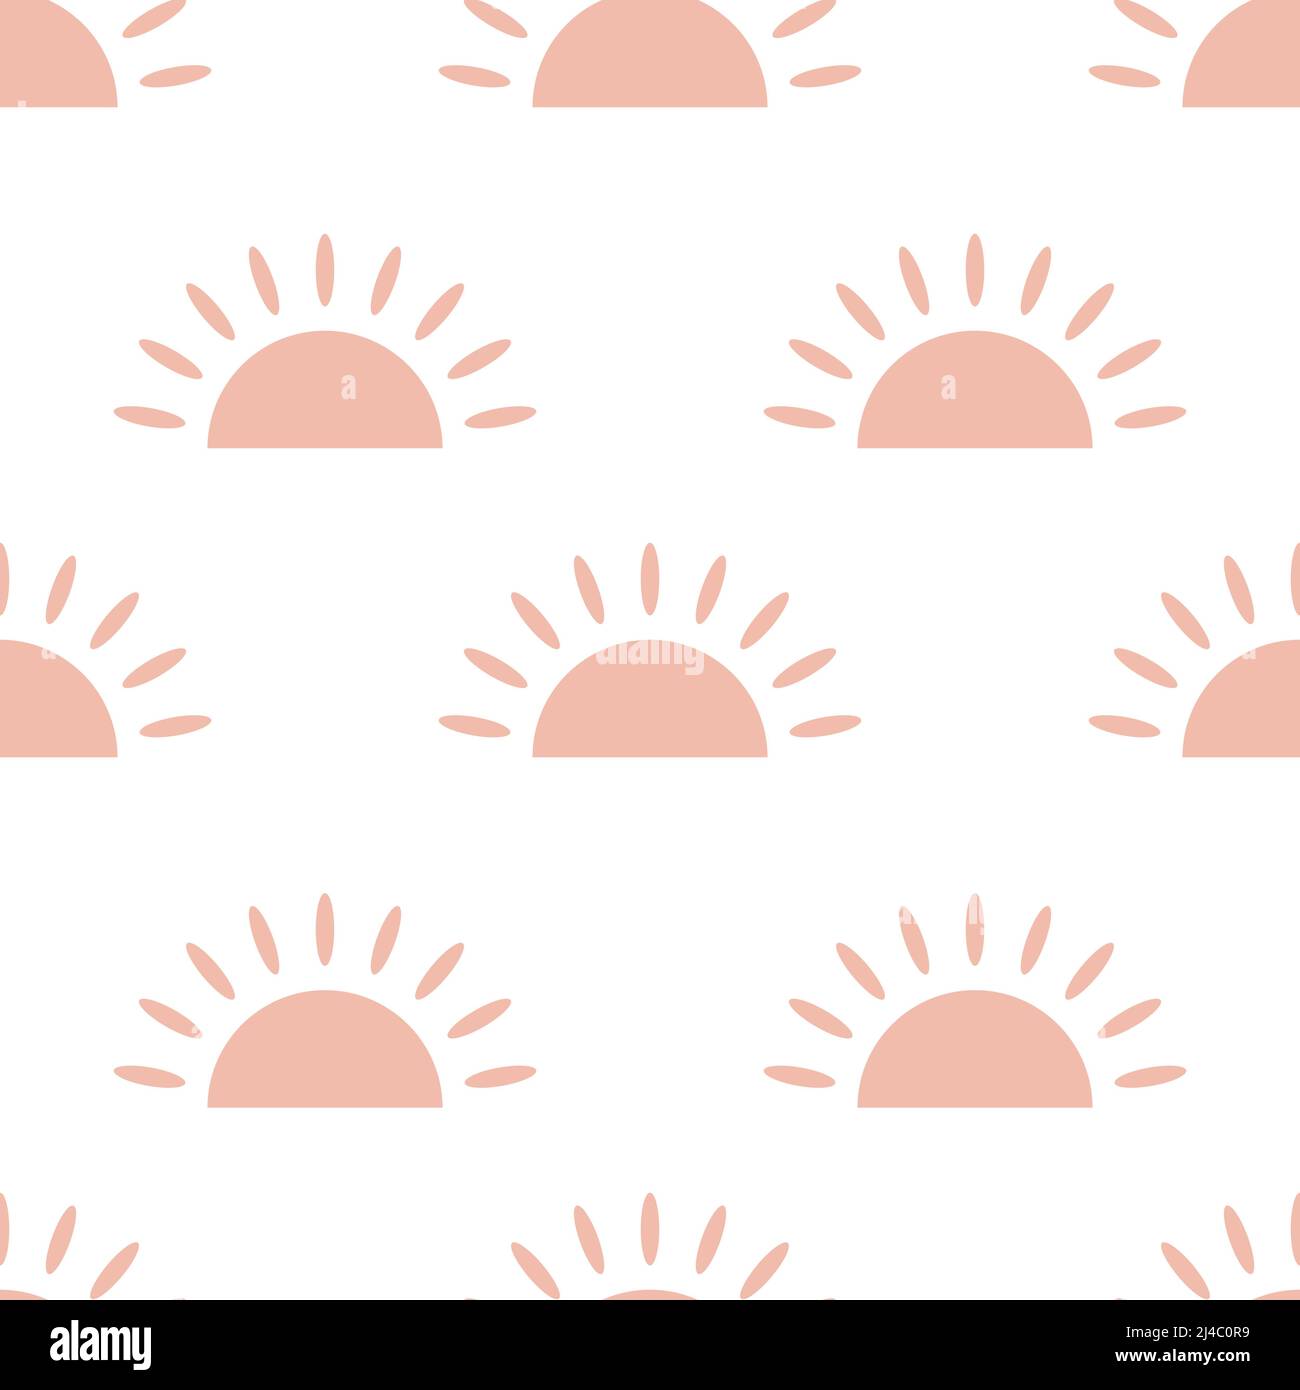 Handgezeichnetes rosa halb Sonne Doodle Objekt isoliert auf weißem Hintergrund ist in Nahtloses Muster - Vektor-Illustration Stock Vektor